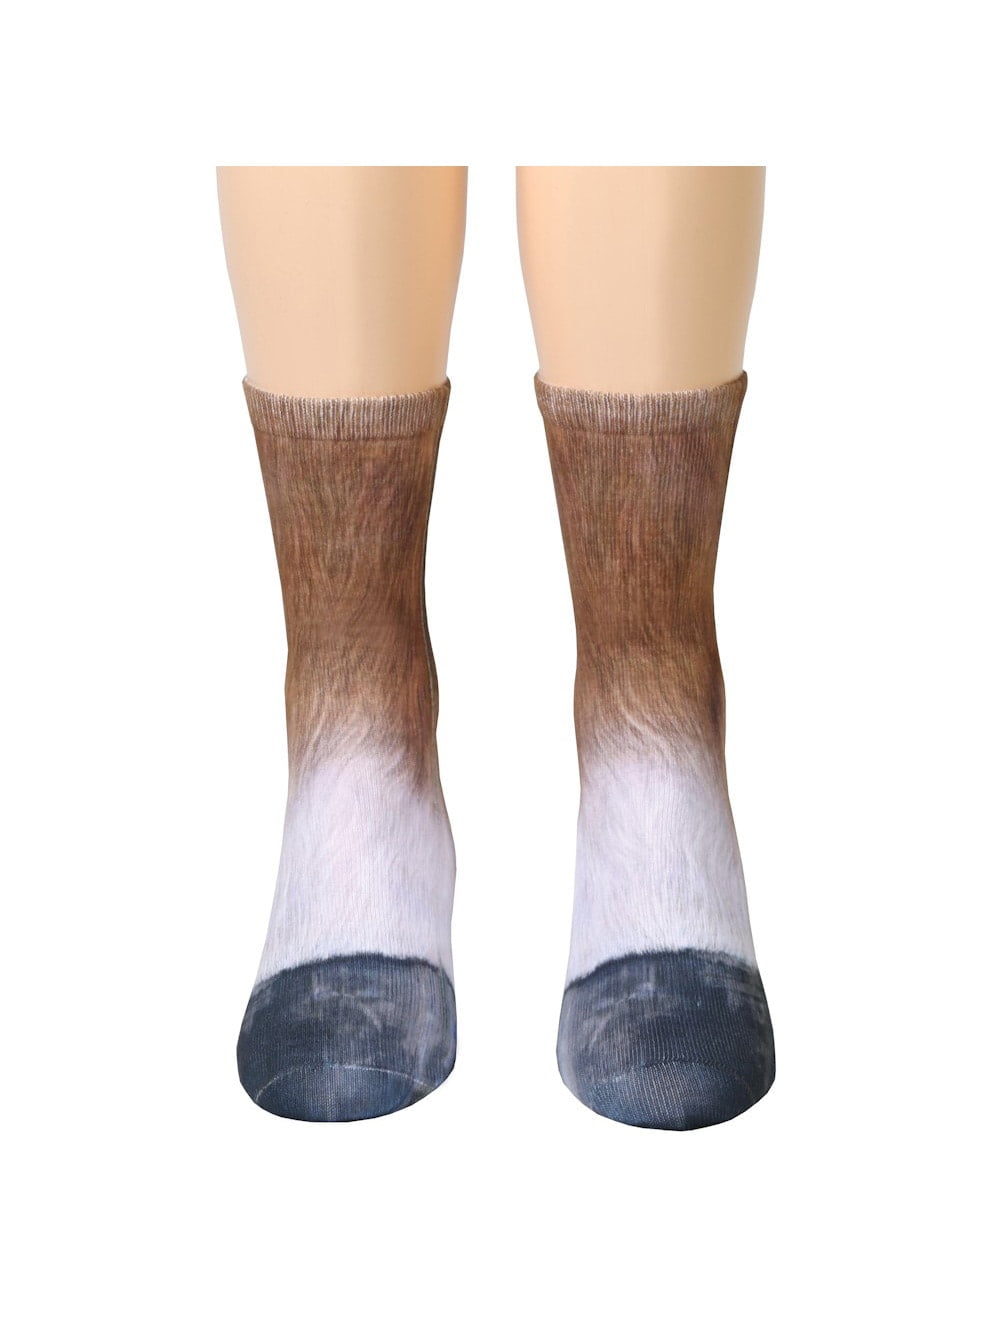 Unisex Adult/Child Sublimated Print Socks Animal Paw Crew Animal Feet Socks Hot 